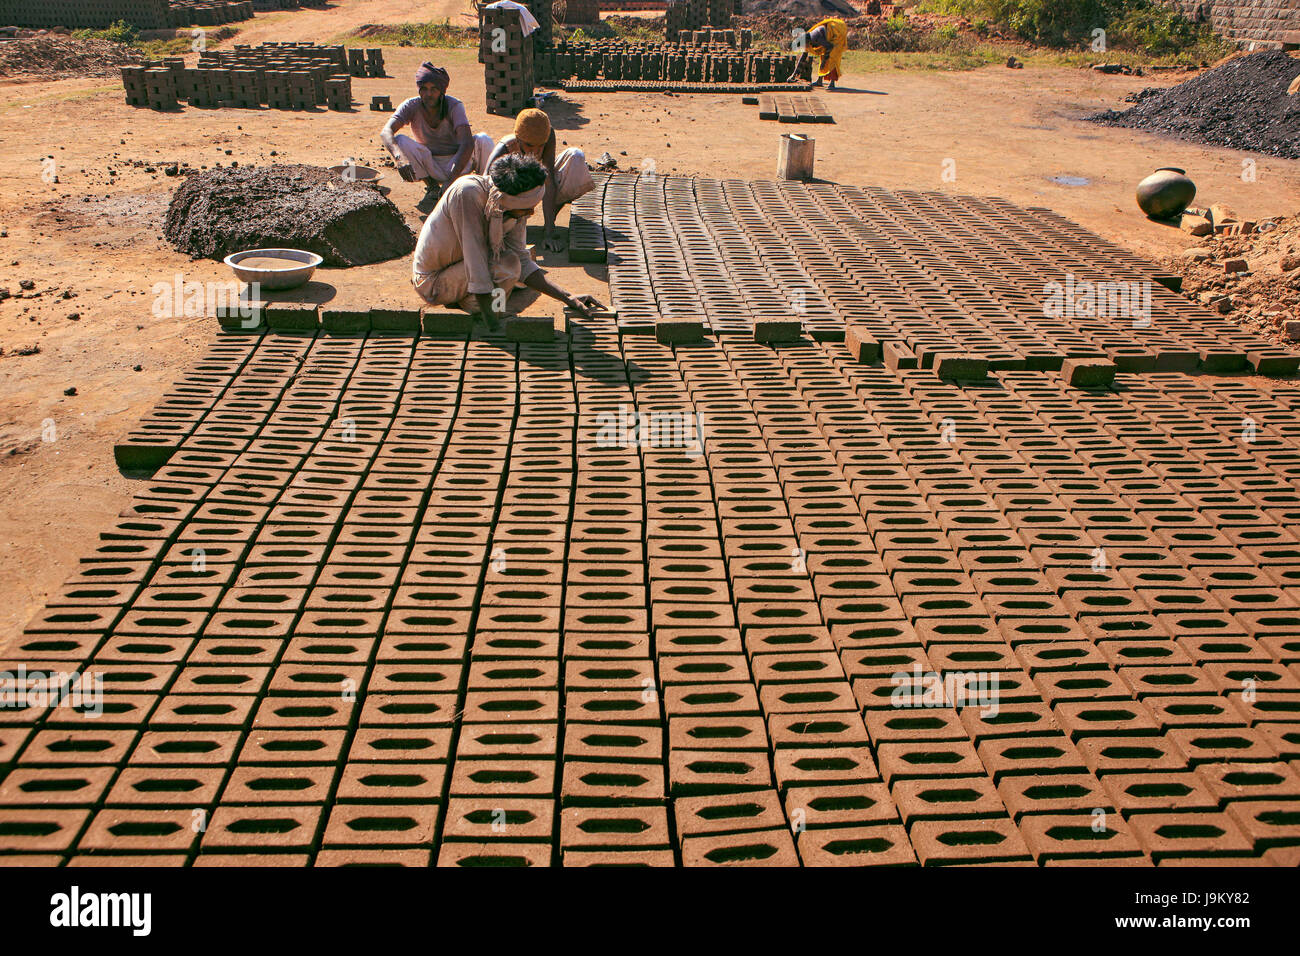 man making bricks, barwani, madhya pradesh, India, Asia Stock Photo